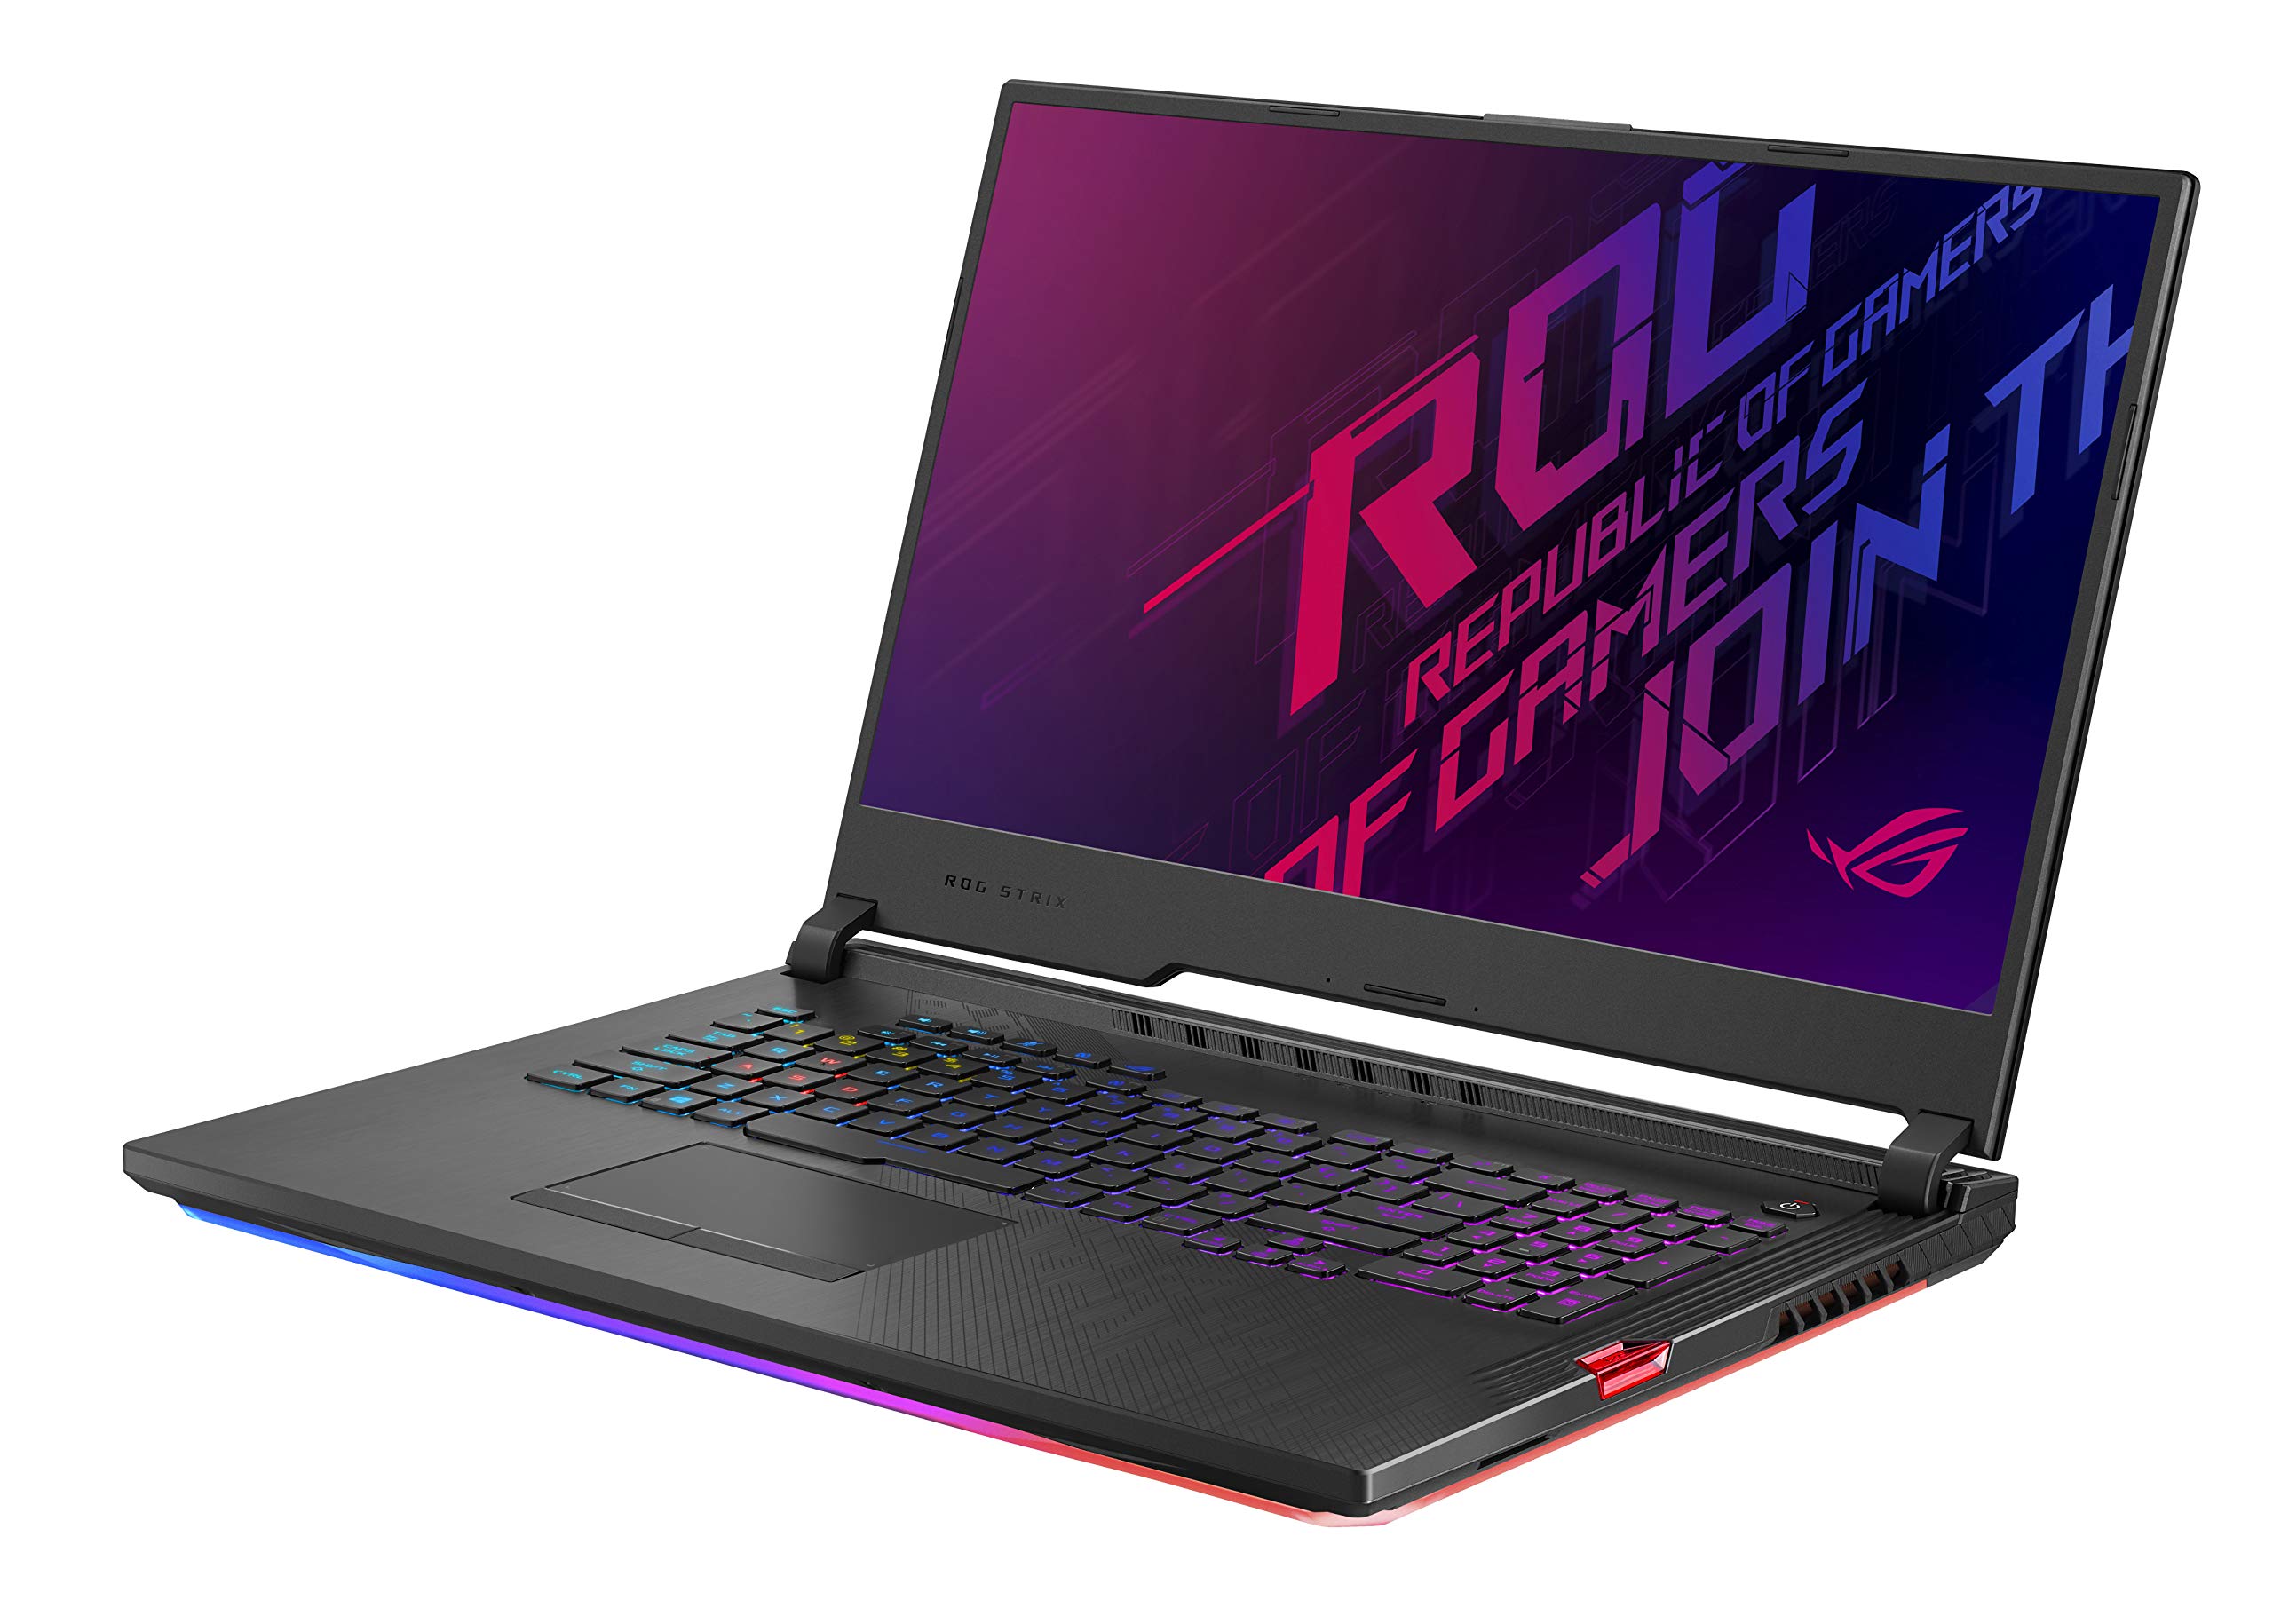 Asus Rog Strix Hero Iii 2019 Gaming Laptop 173” 144hz Ips Type Fhd